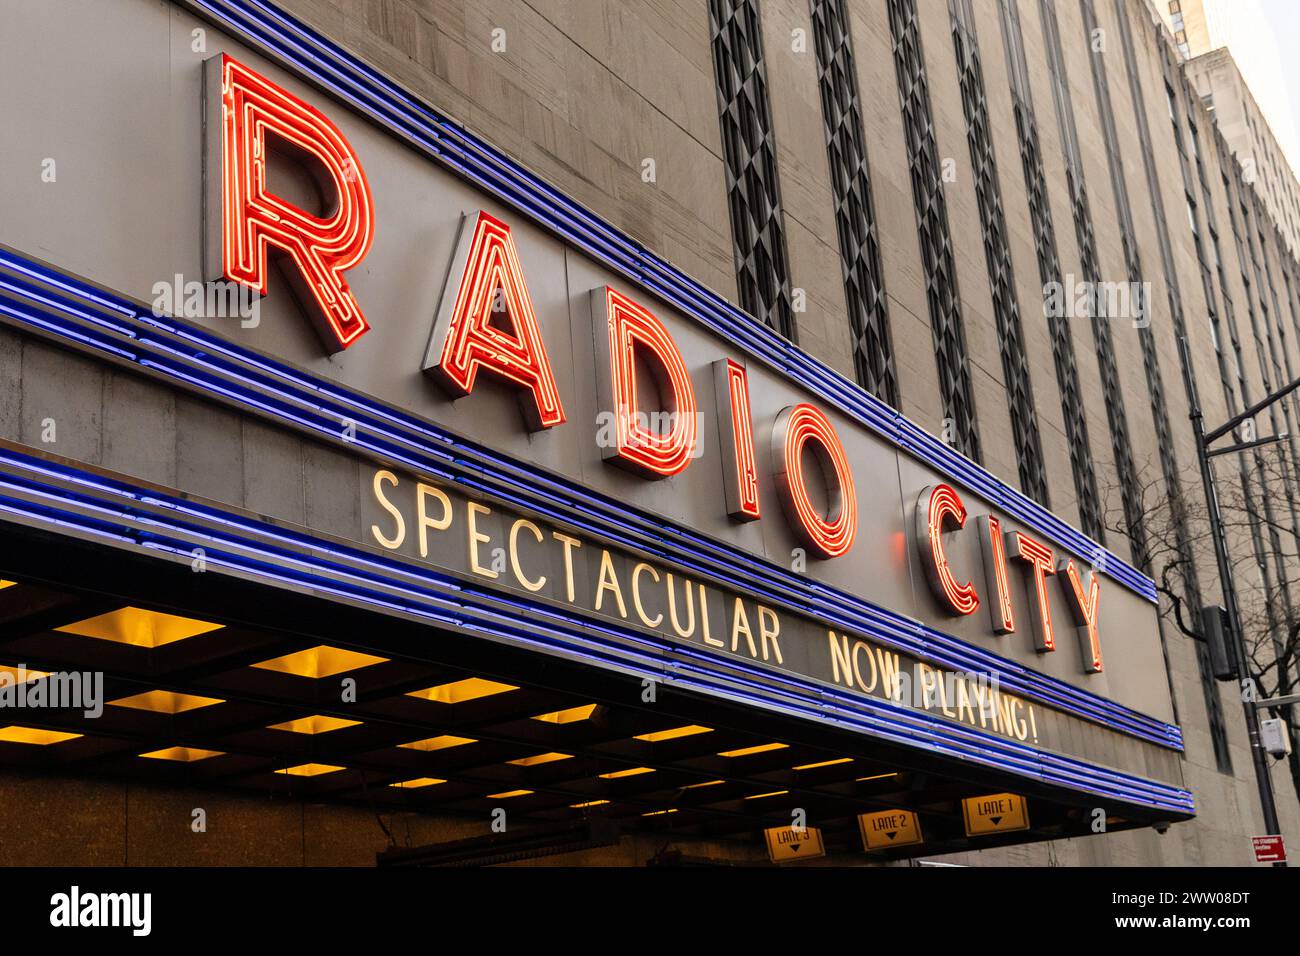 Le radio City Music Hall est situé dans le quartier de Manhattan à New York et près du Rockefeller Center. Banque D'Images